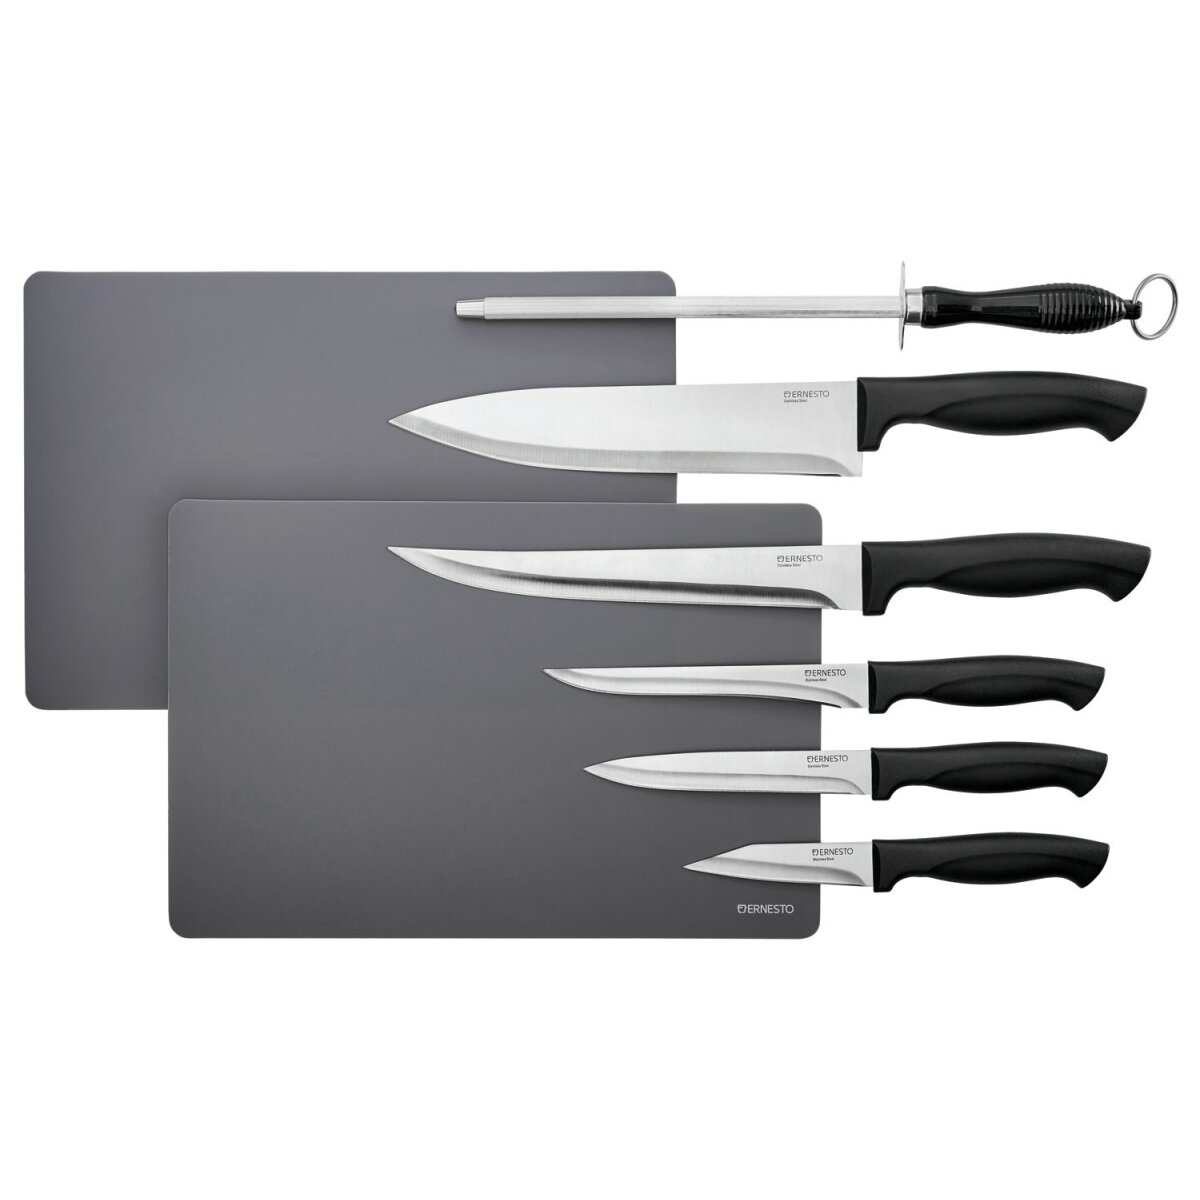 ERNESTO® Messerset, 8-teilig (Messerset mit Schleifstab) - B-Ware sehr gut,  7,99 €